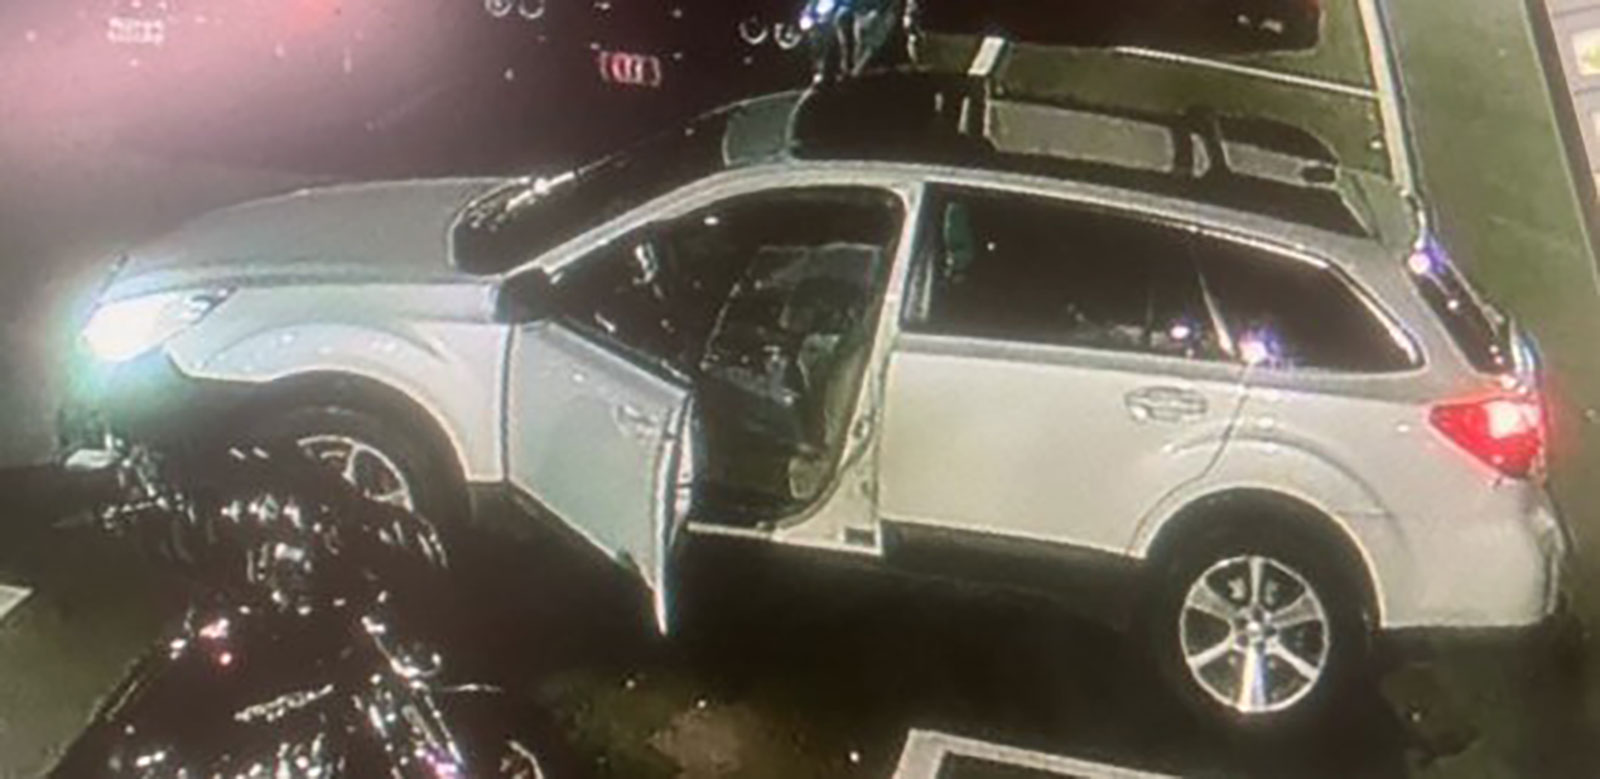 劉易斯頓警察局發佈了與此次槍擊事件有關的車輛照片。